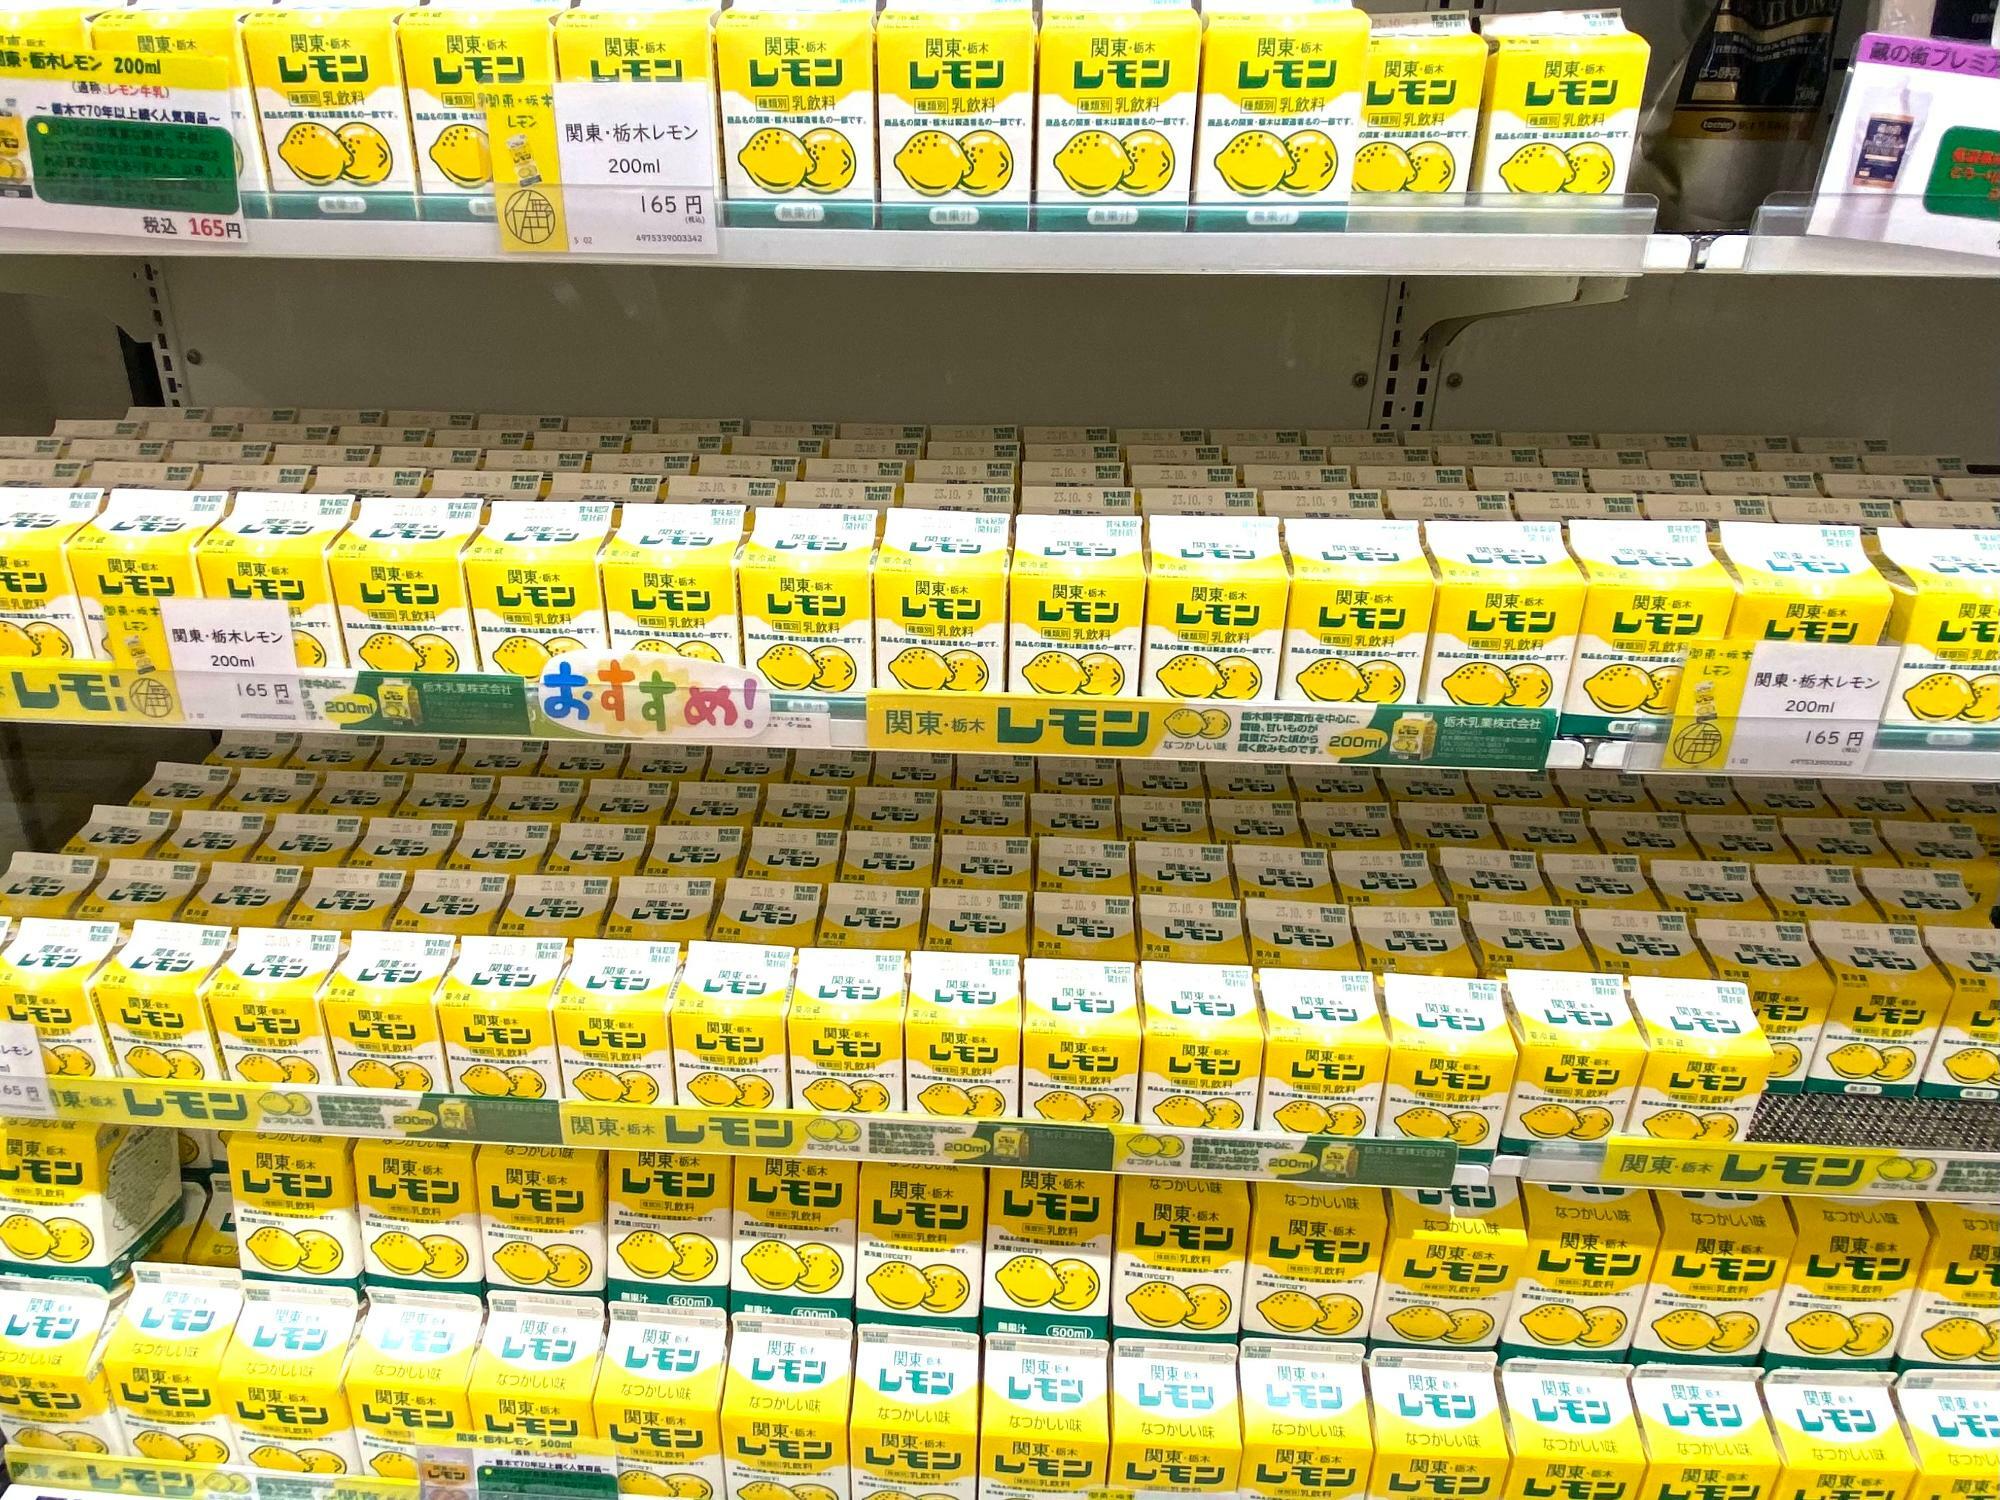 「レモン牛乳」は大変な人気商品なだけあって豊富に並んでいます。